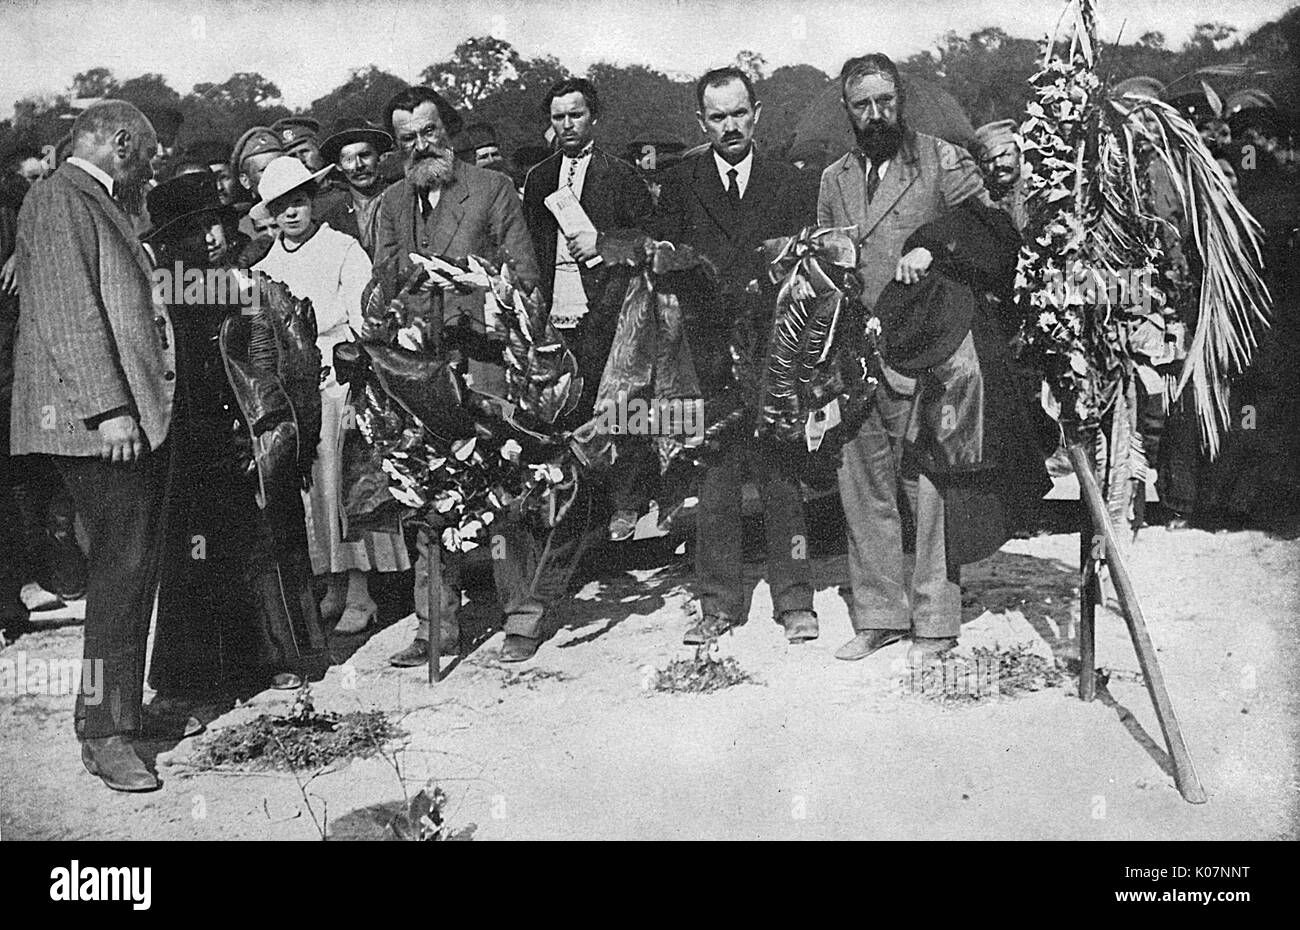 Wreaths for fallen Bolsheviks during Revolution, Russia Stock Photo